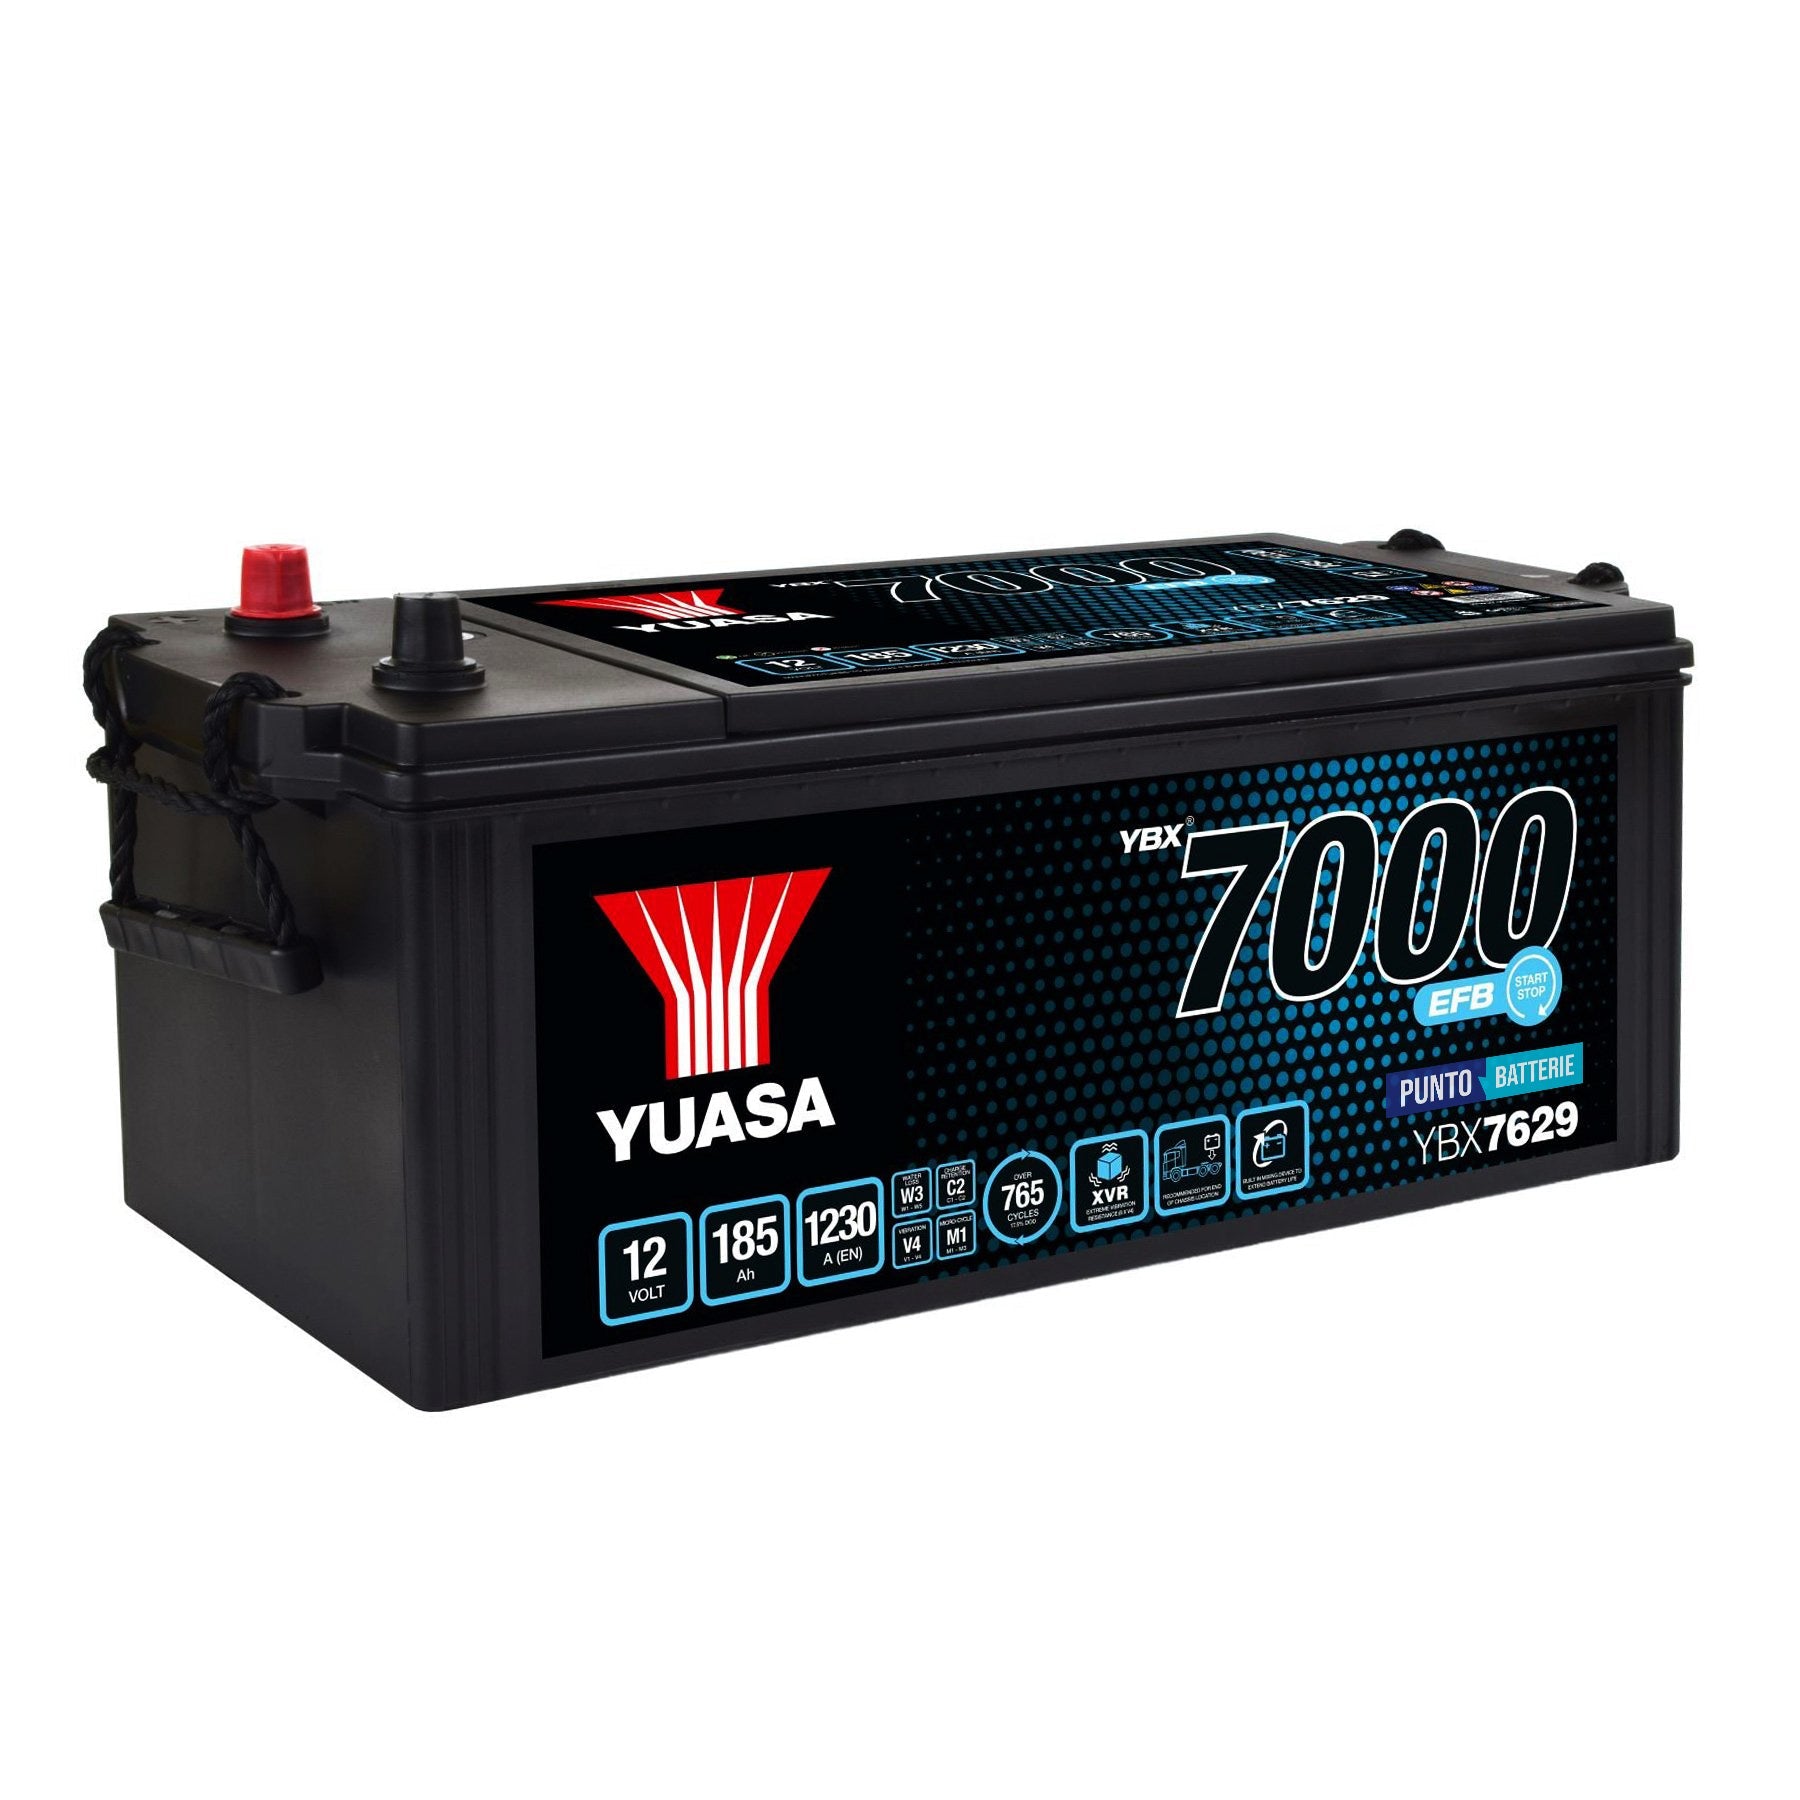 Batteria originale Yuasa YBX7000 YBX7629, dimensioni 511 x 222 x 215, polo positivo a sinistra, 12 volt, 185 amperora, 1230 ampere, EFB. Batteria per camion e veicoli pesanti.